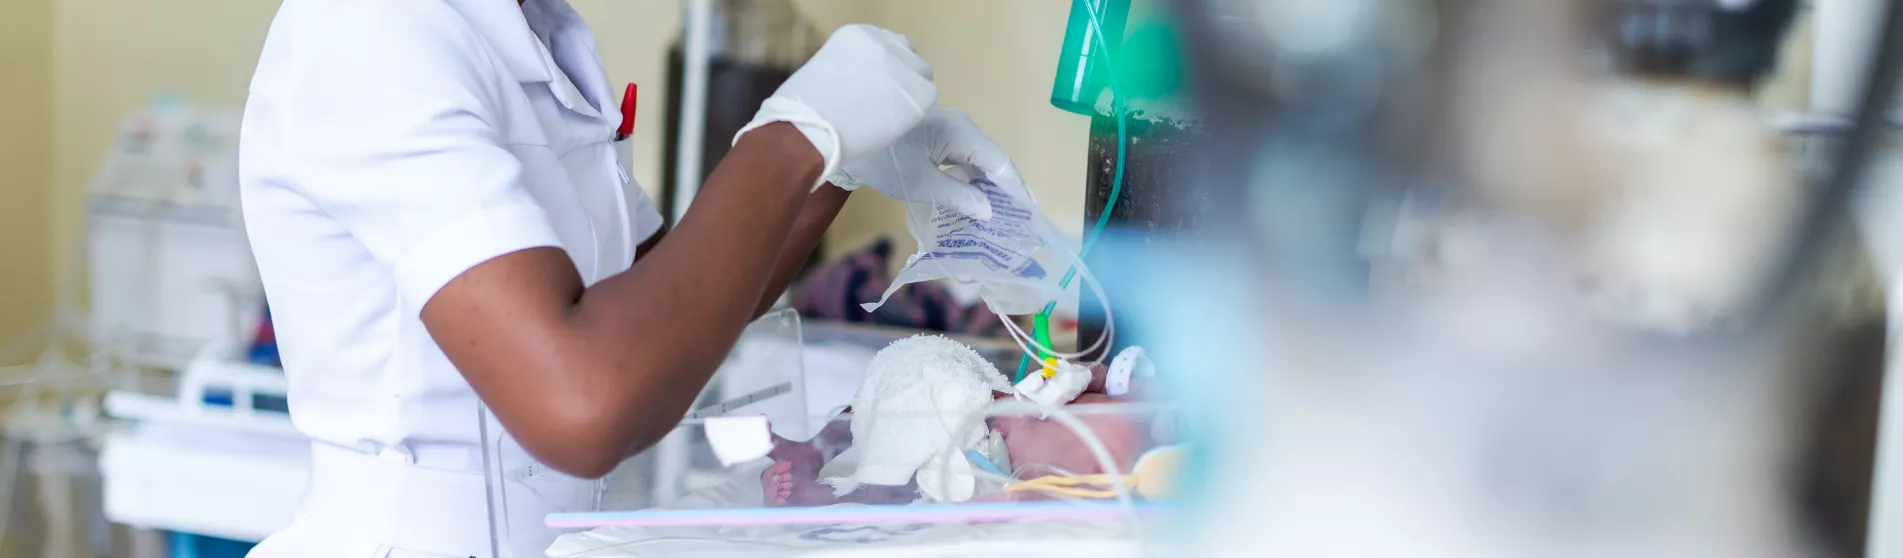 Zambia neonatal care